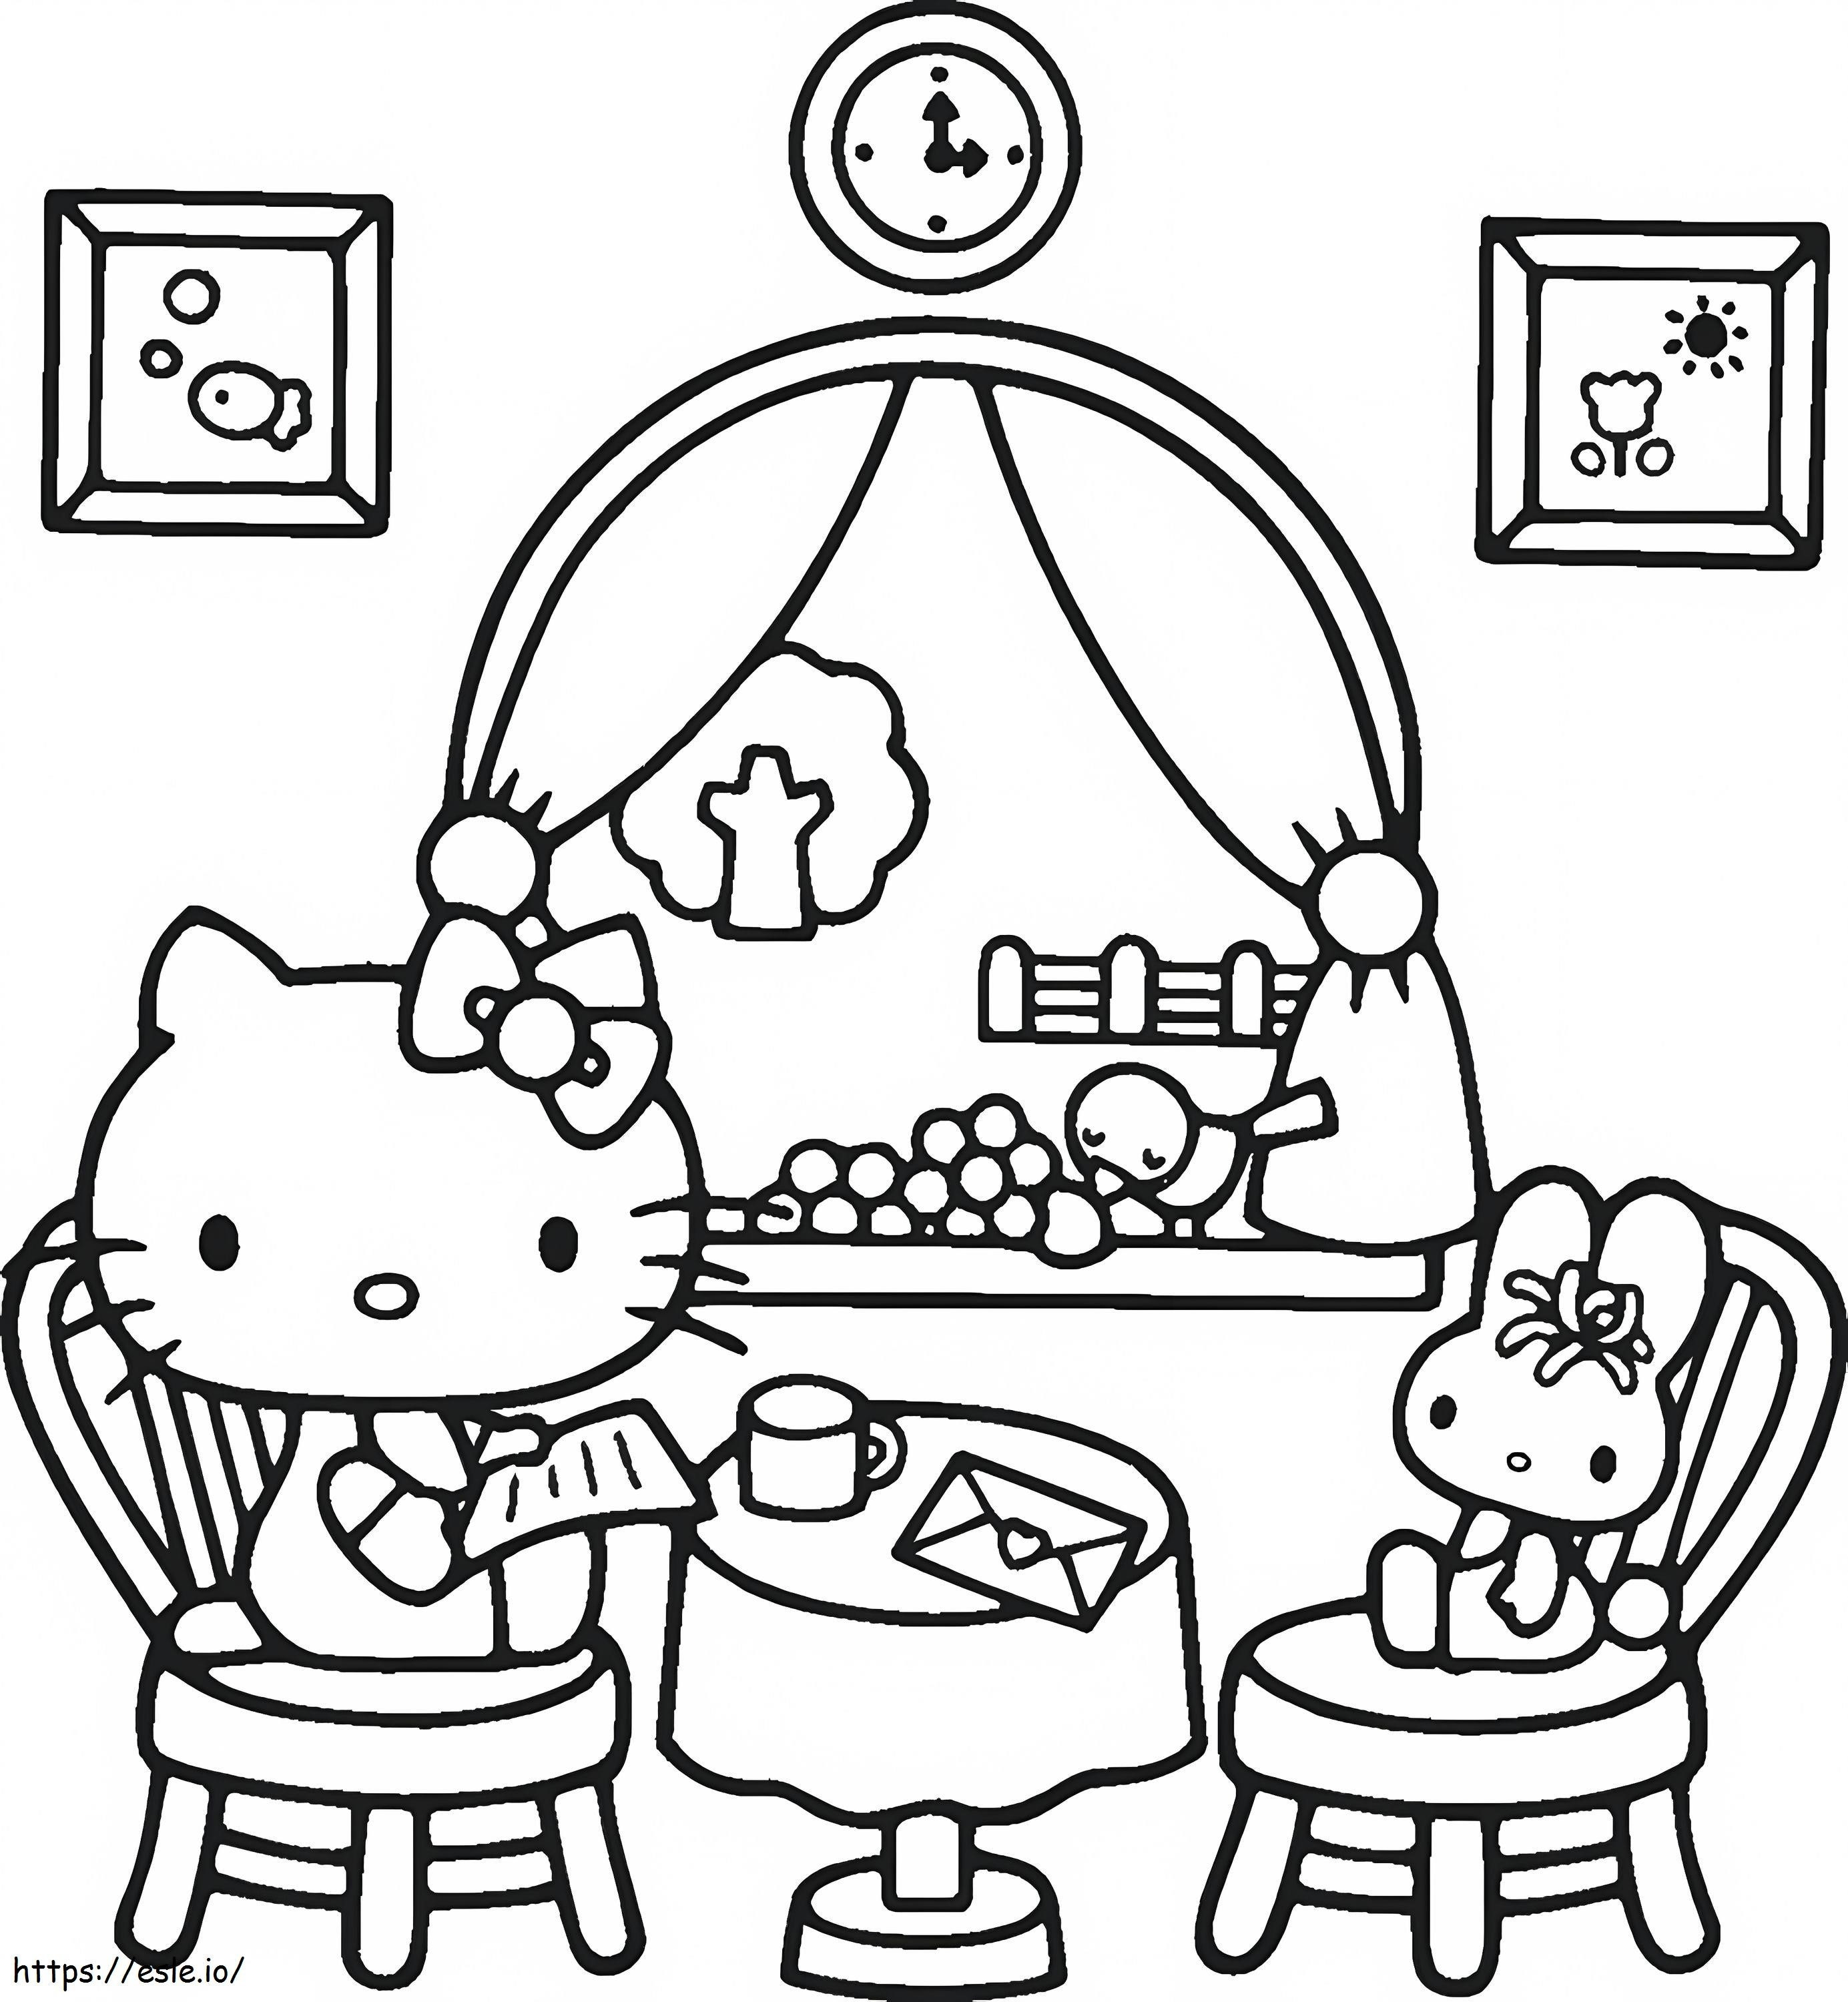 1539942005 Come disegnare Download gratuito di Hello Kitty da colorare